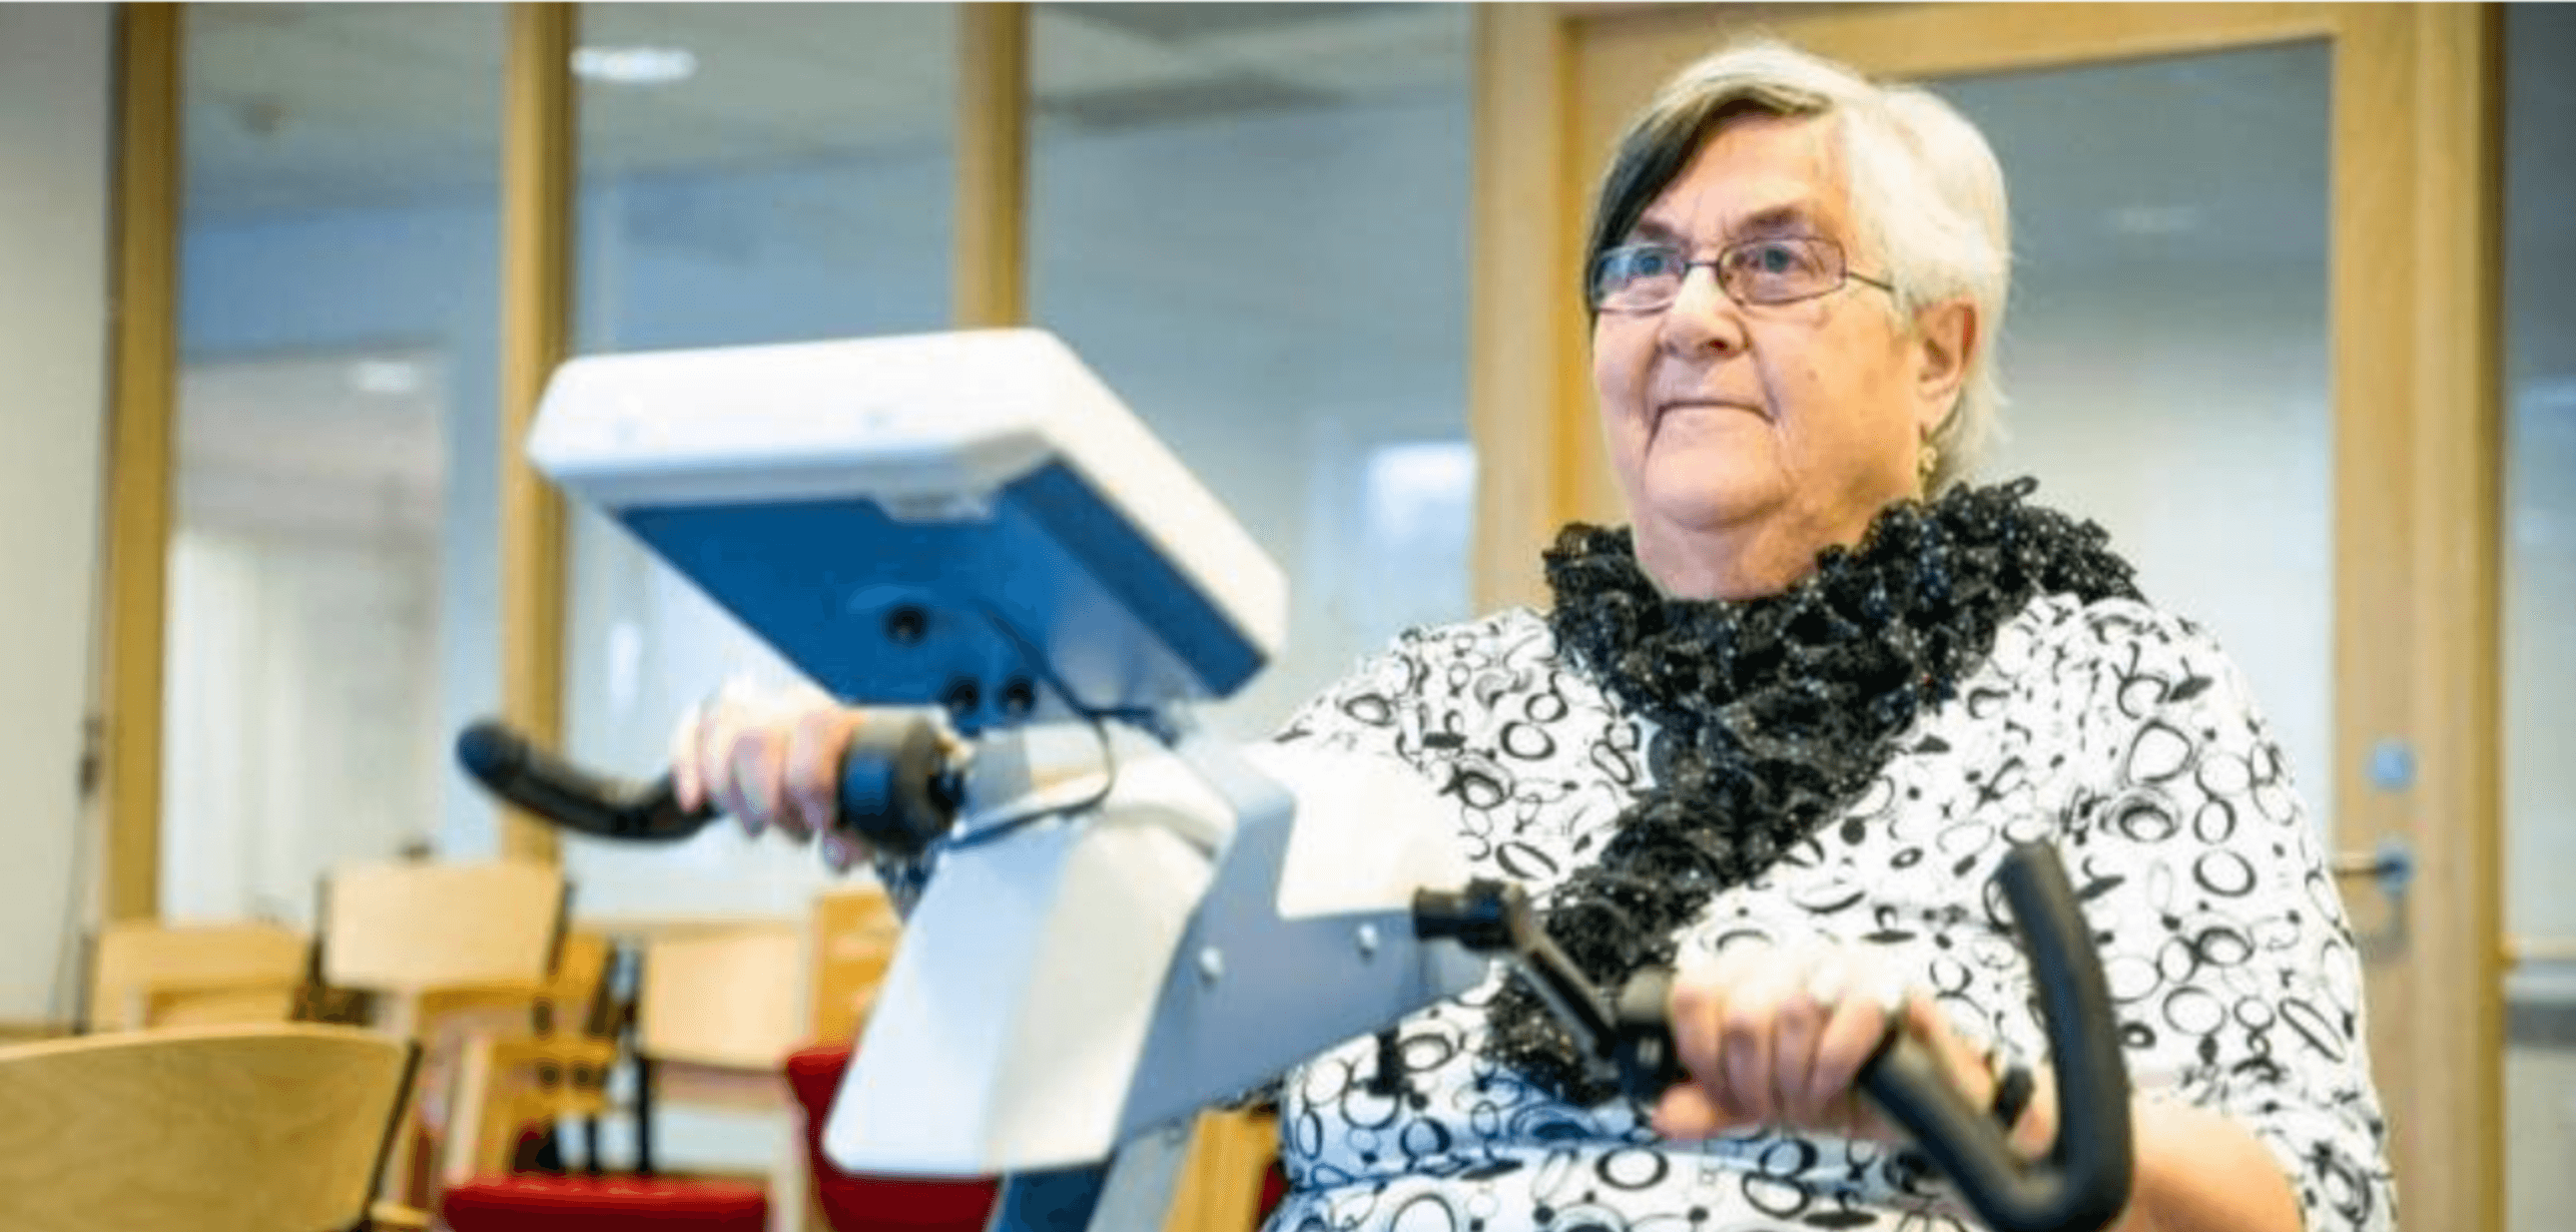 Wenche Gjertsen hadde en hverdag preget av daglige fall. Etter tre måneder med sykkeltrening og Motiview har hun kun falt tre ganger. - Det er reneste åpenbaringen, det er helt utrolig, sier 75-åringen.